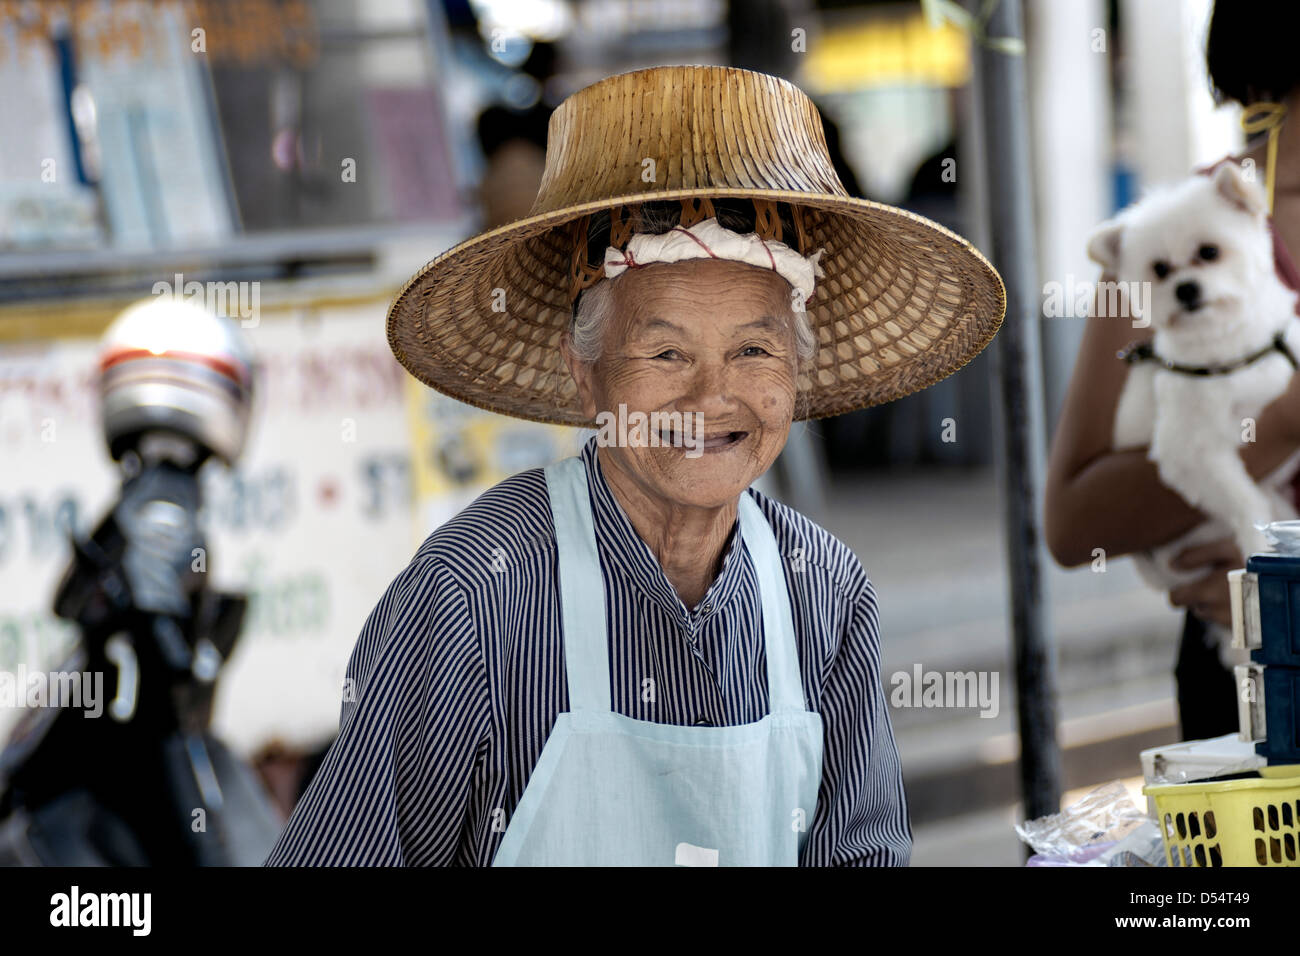 Femme âgée street food vendor, heureux et souriant à son travail. La Thaïlande Asie du sud-est Banque D'Images